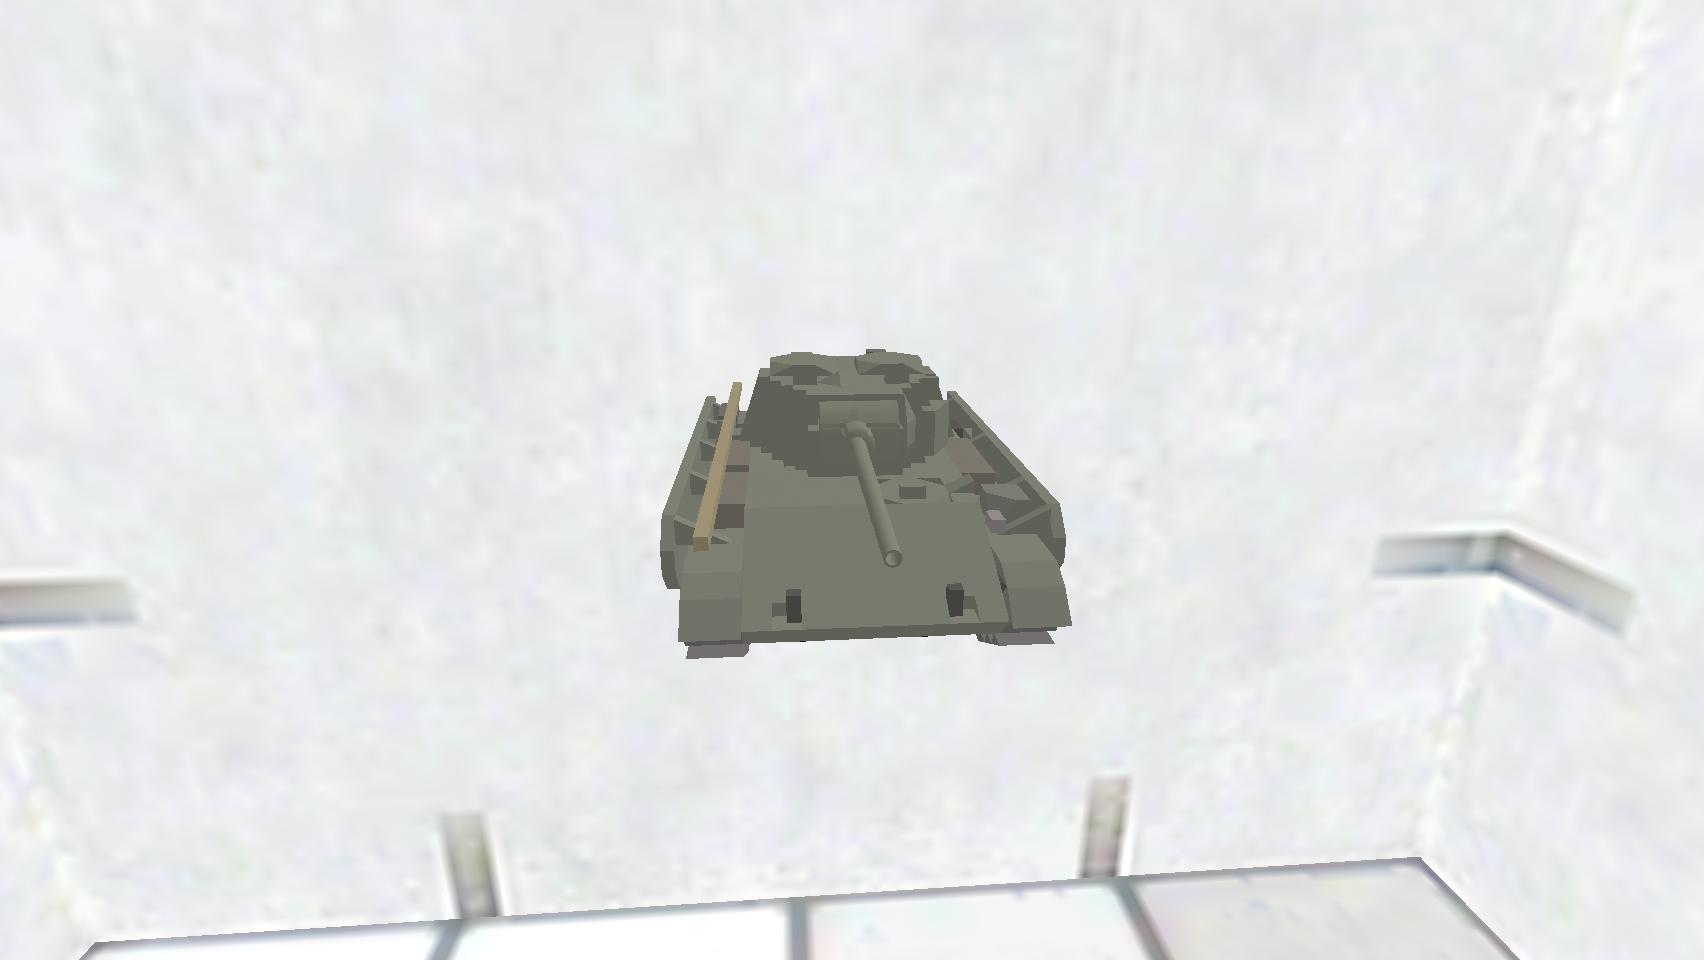 T-44-100